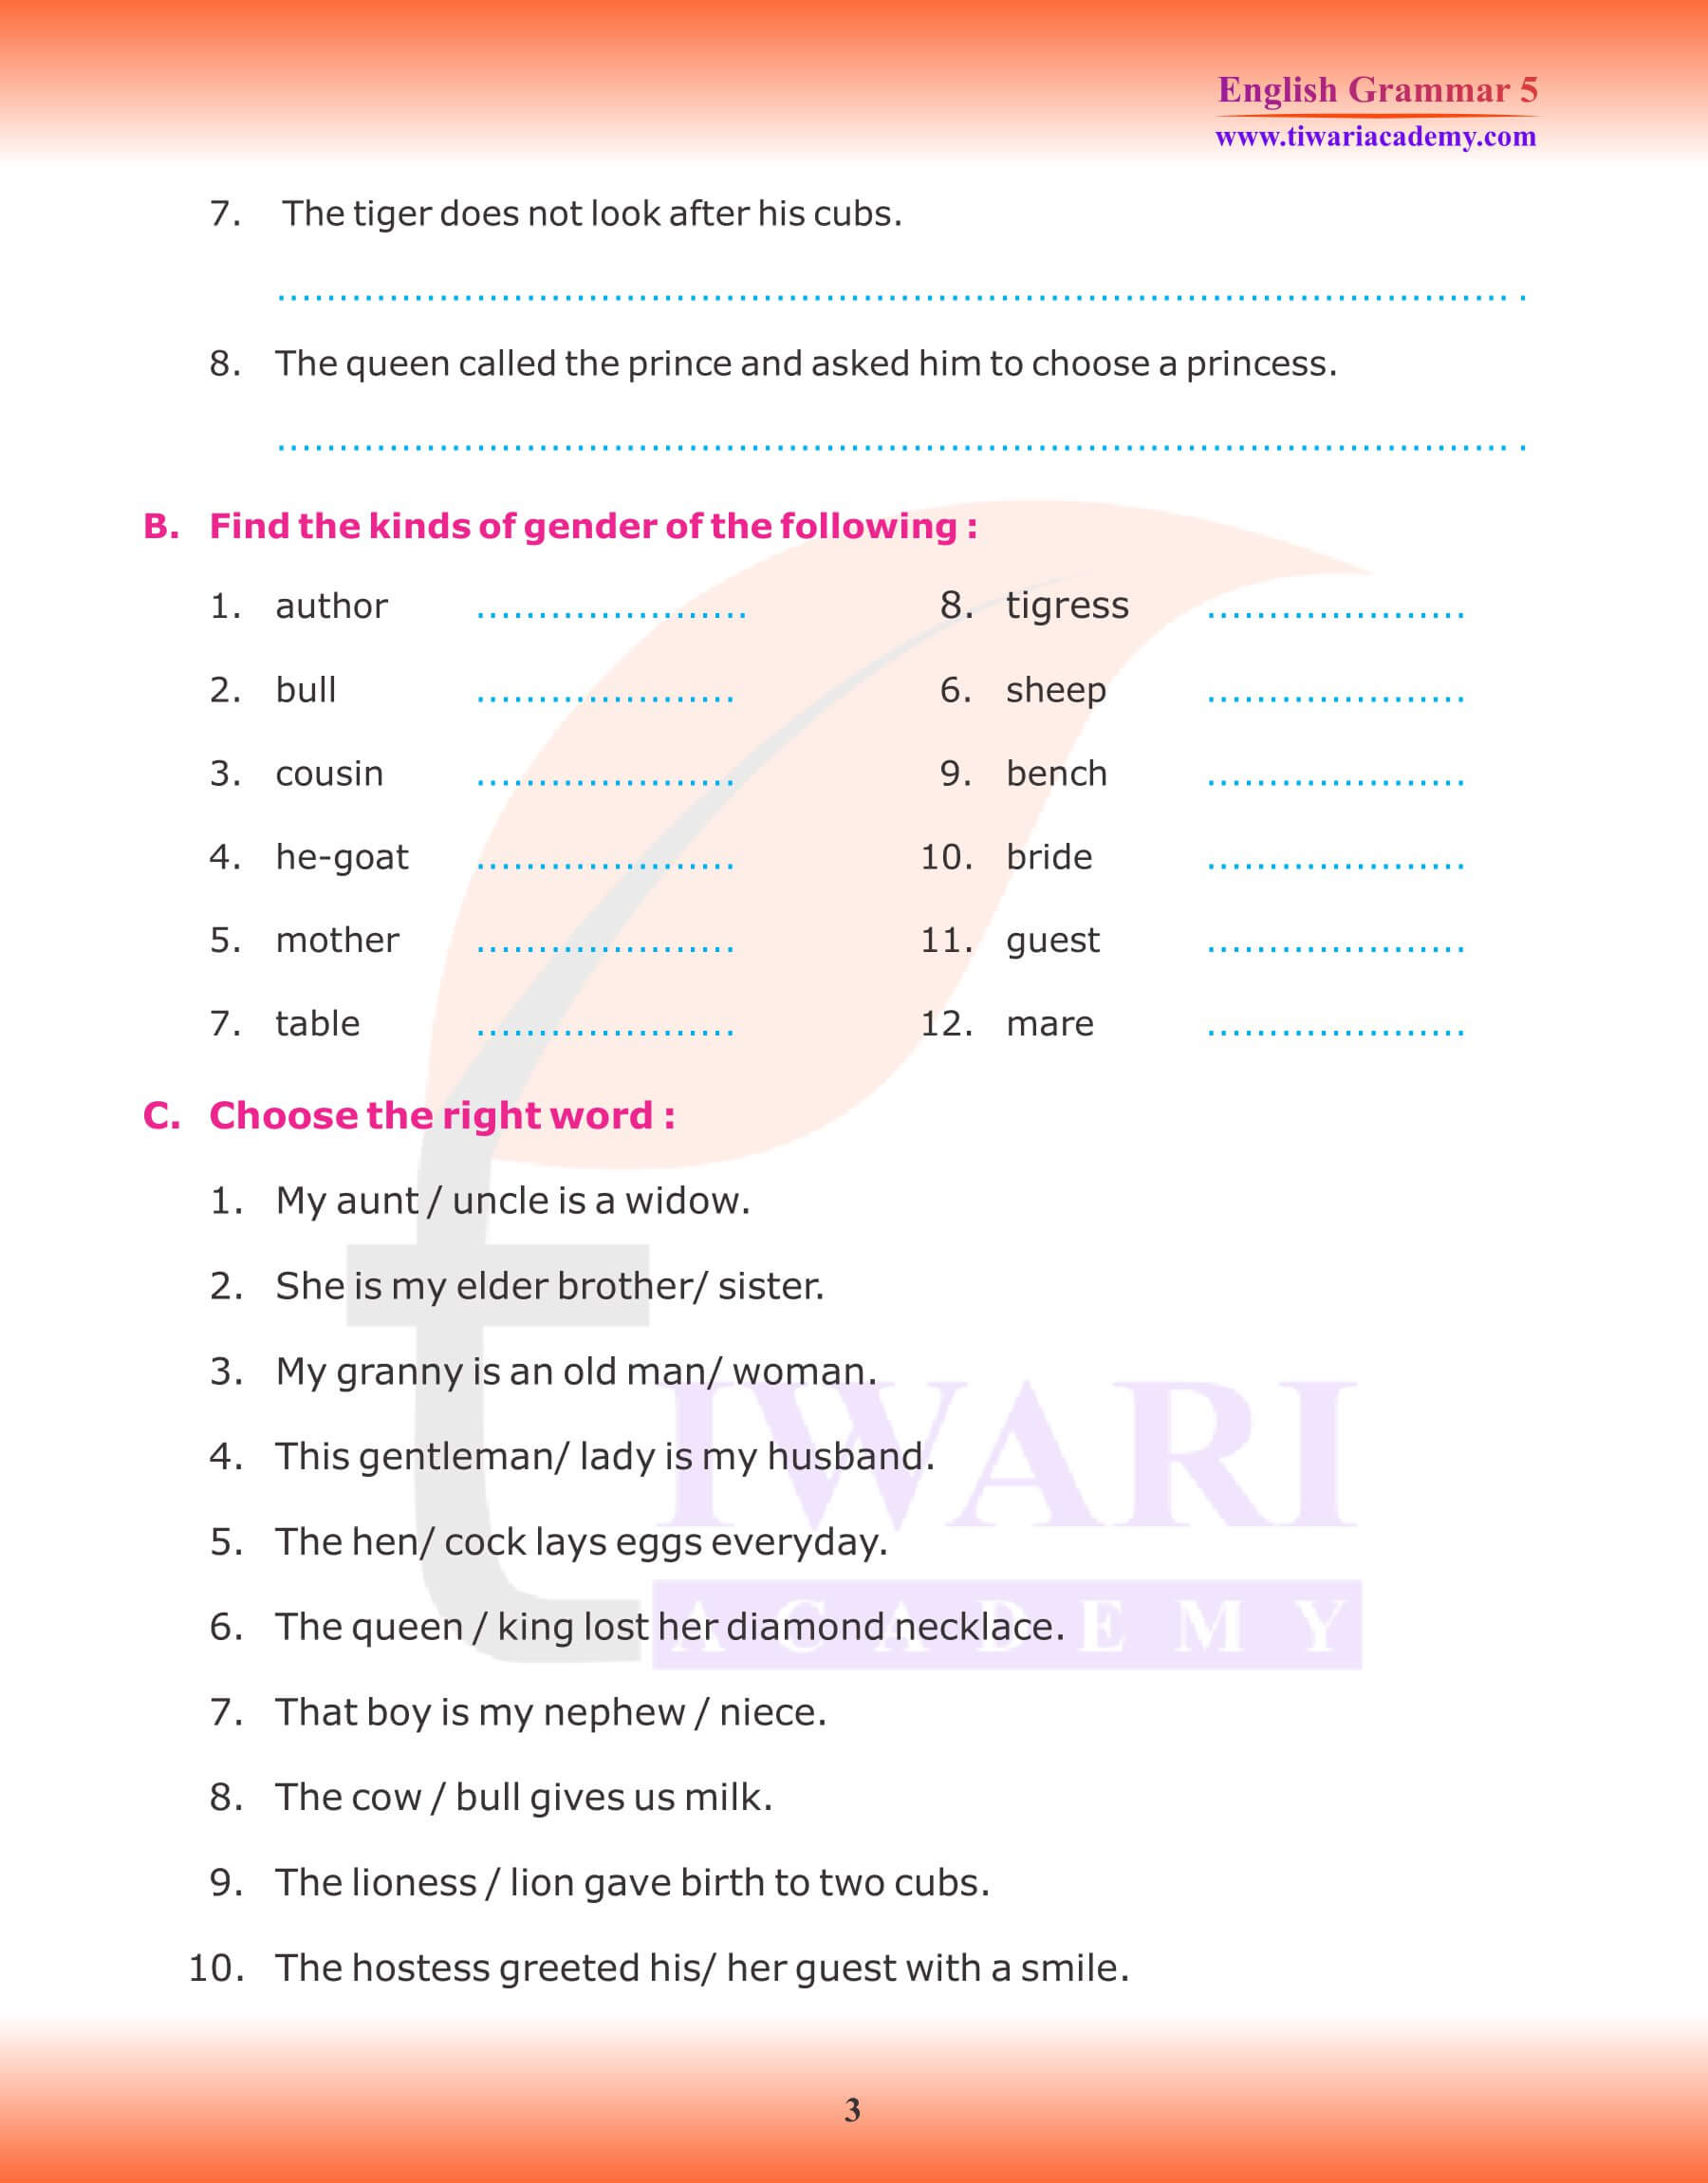 Class 5 English Grammar Noun Gender